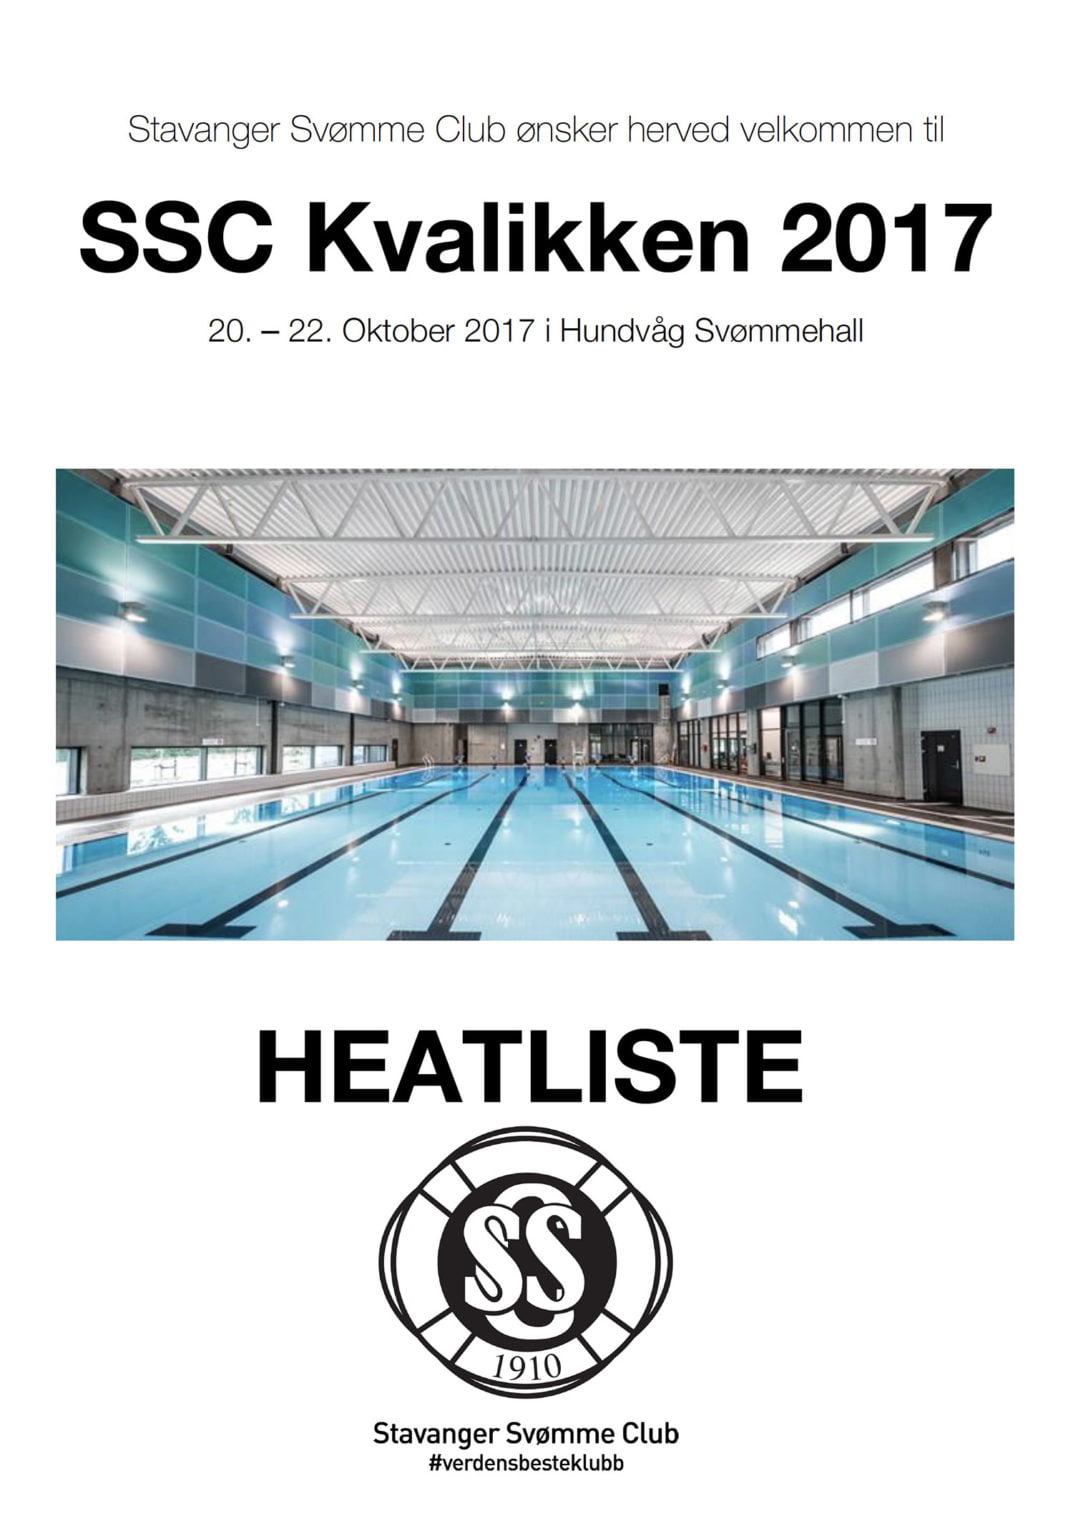 heatliste ssc kvalikken 2017 small